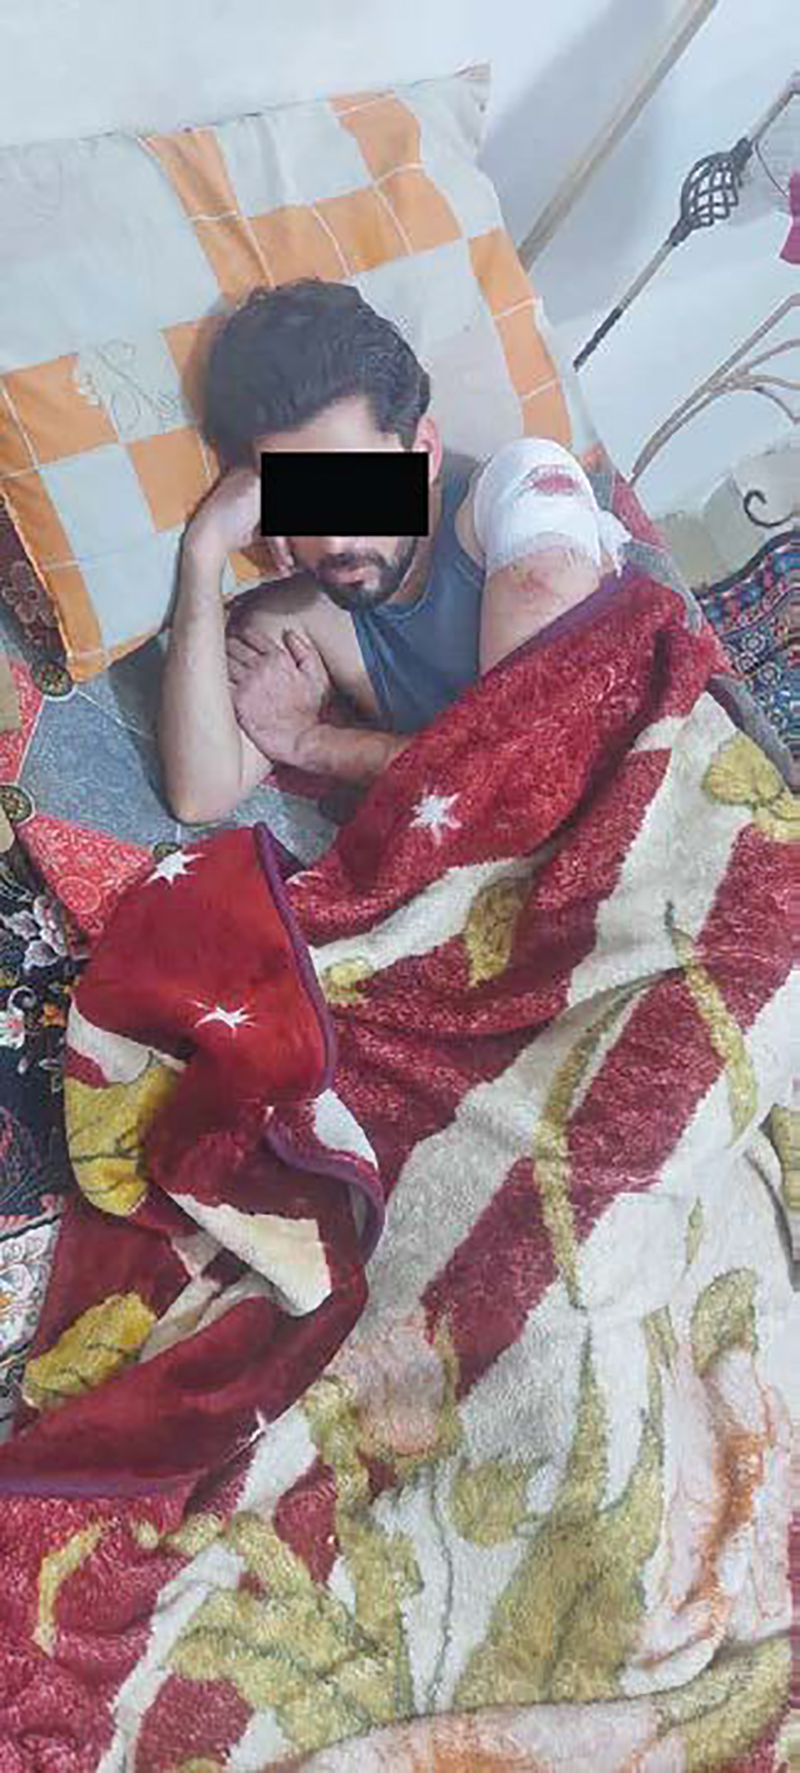 دستگیری عامل جنایت خانوادگی در خواب! + عکس هنگام دستگیری زیر پتو